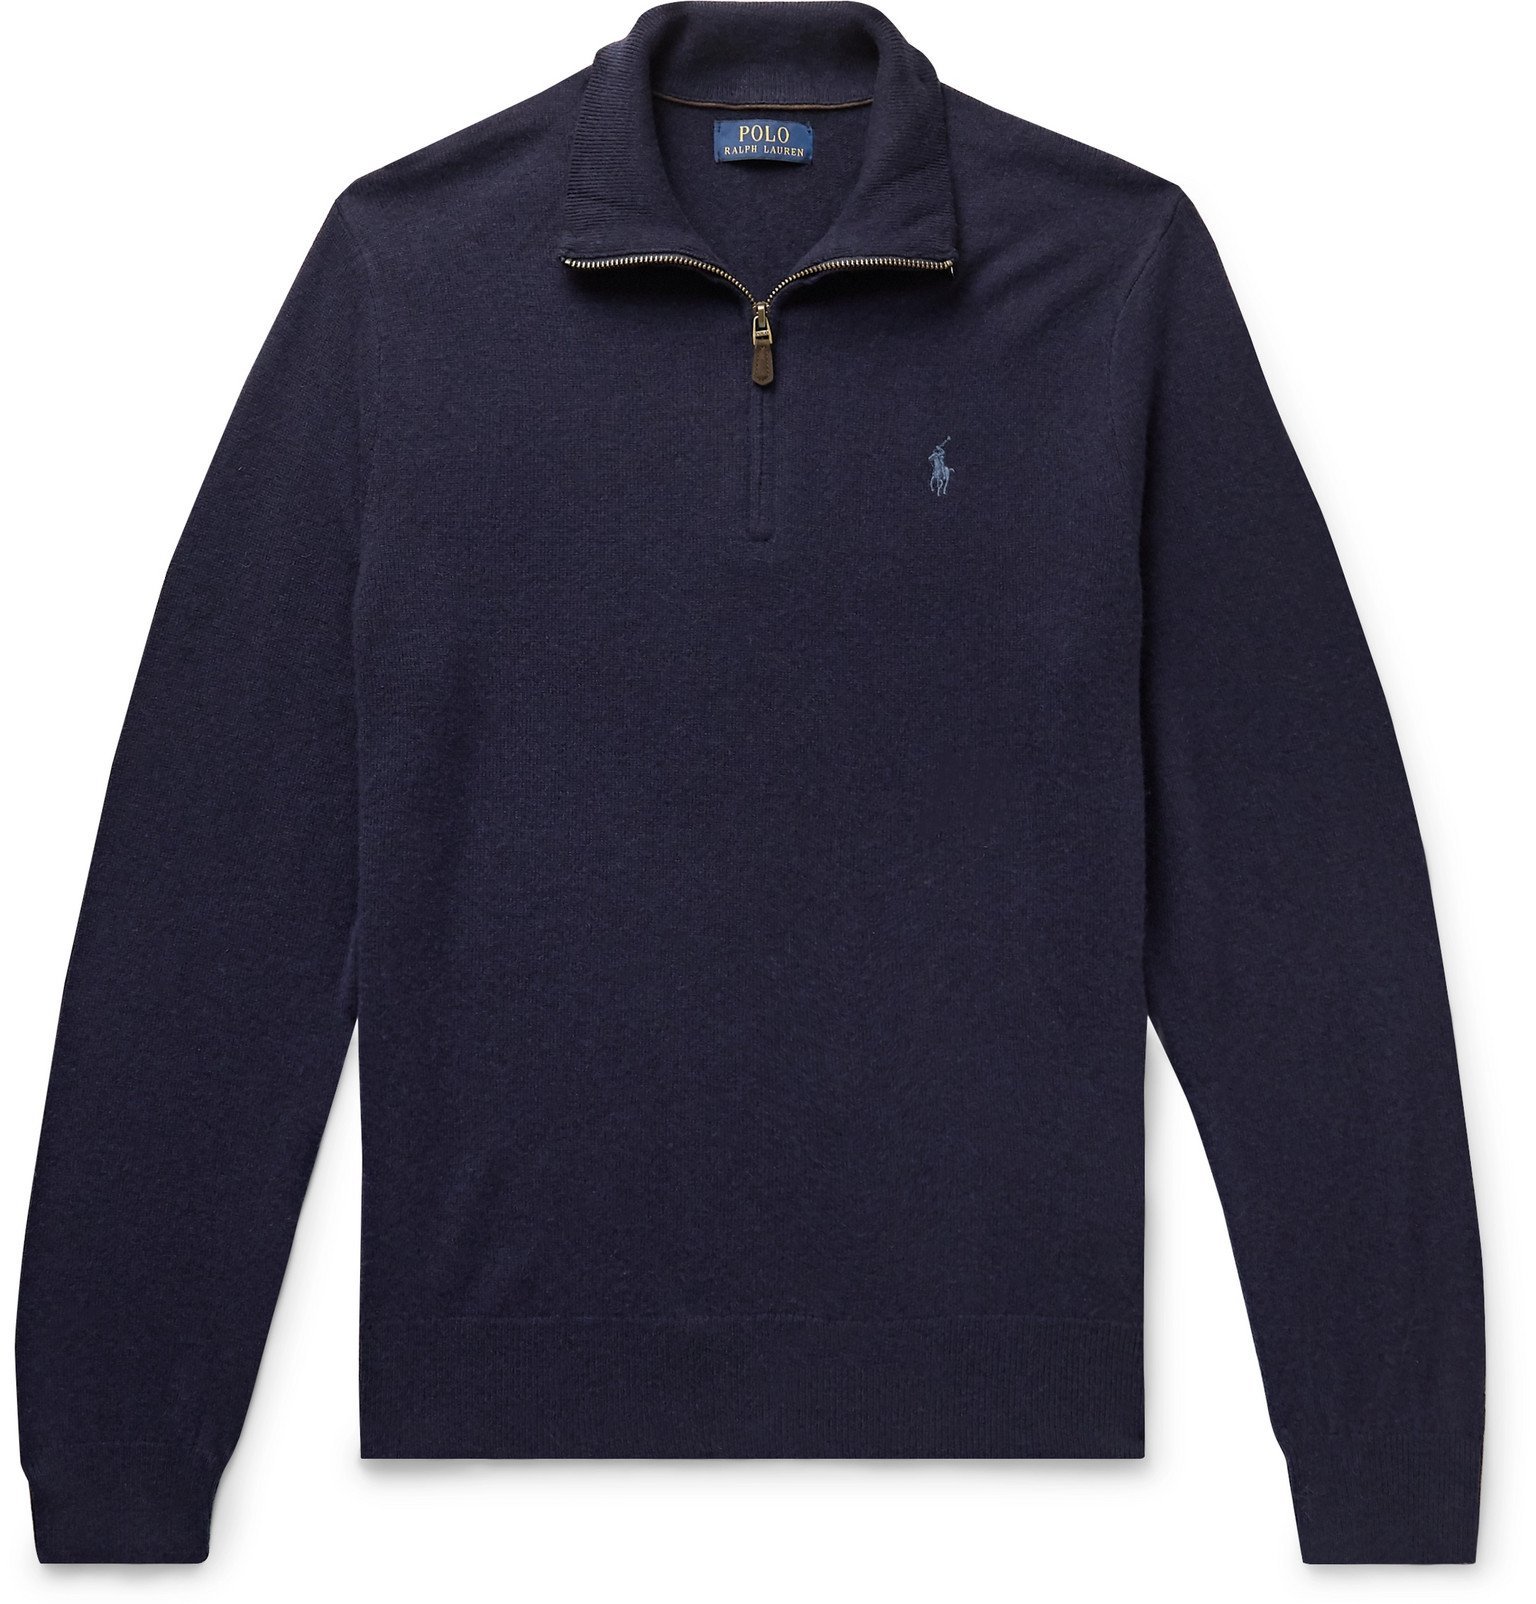 Polo Ralph Lauren - Merino Wool Half-Zip Sweater - Blue Polo Ralph Lauren